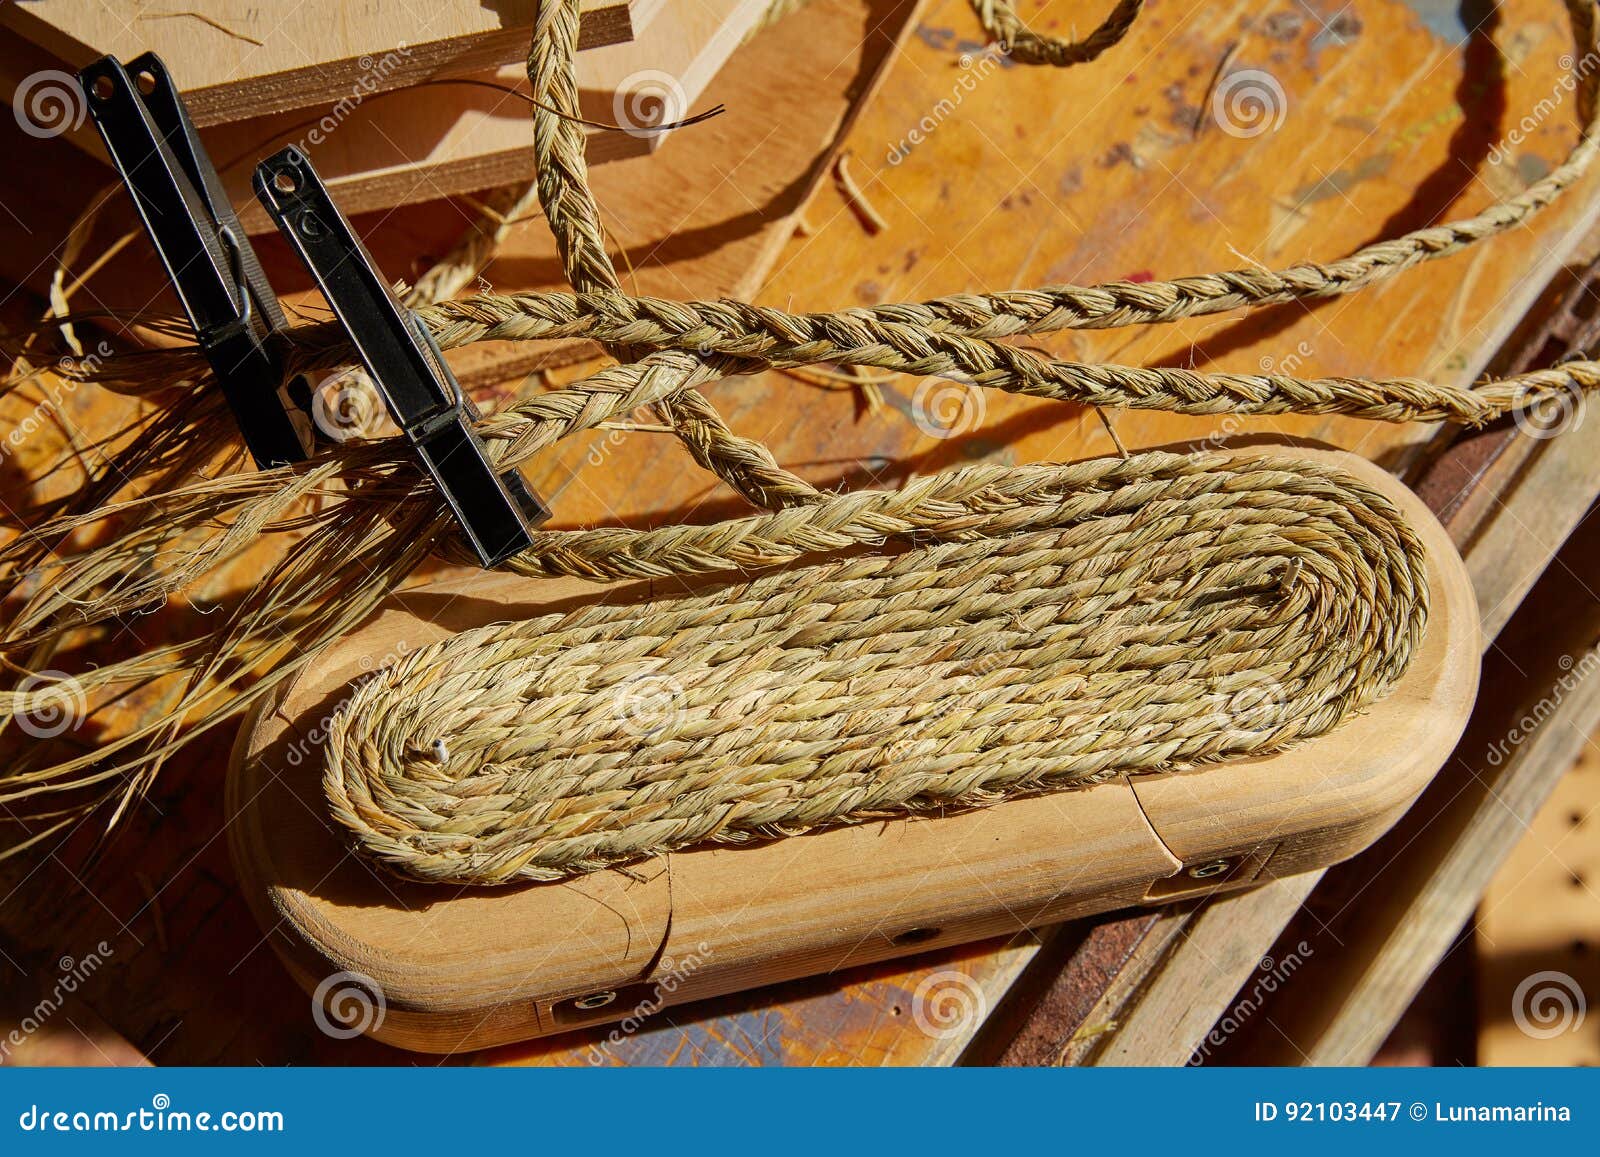 Hierba de esparto del halfah usada para la cestería de los artes. Hierba de esparto del halfah usada para los artes como cestería y alpargatas de los cordones